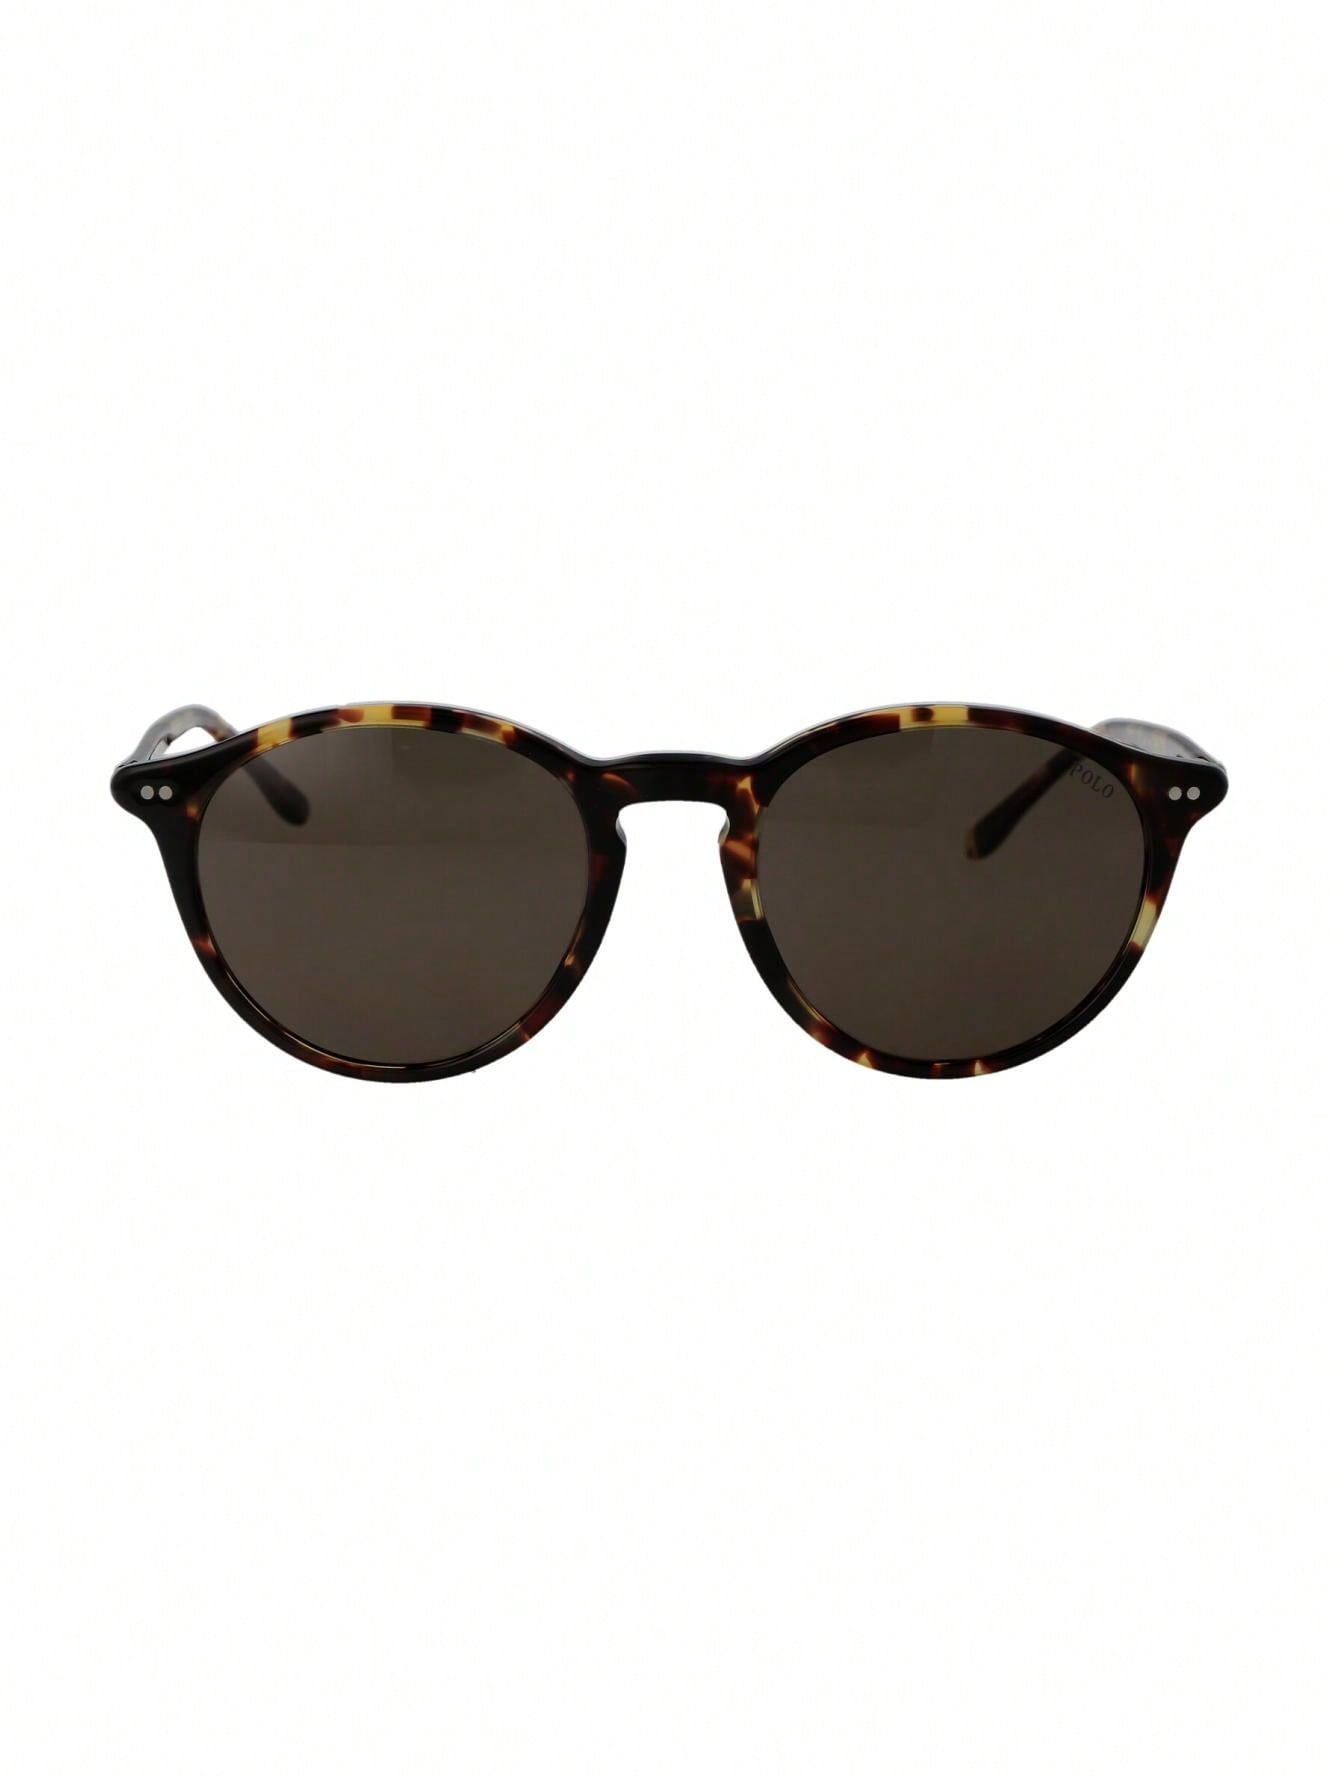 Мужские солнцезащитные очки Polo Ralph Lauren DECOR 0PH419360833, многоцветный